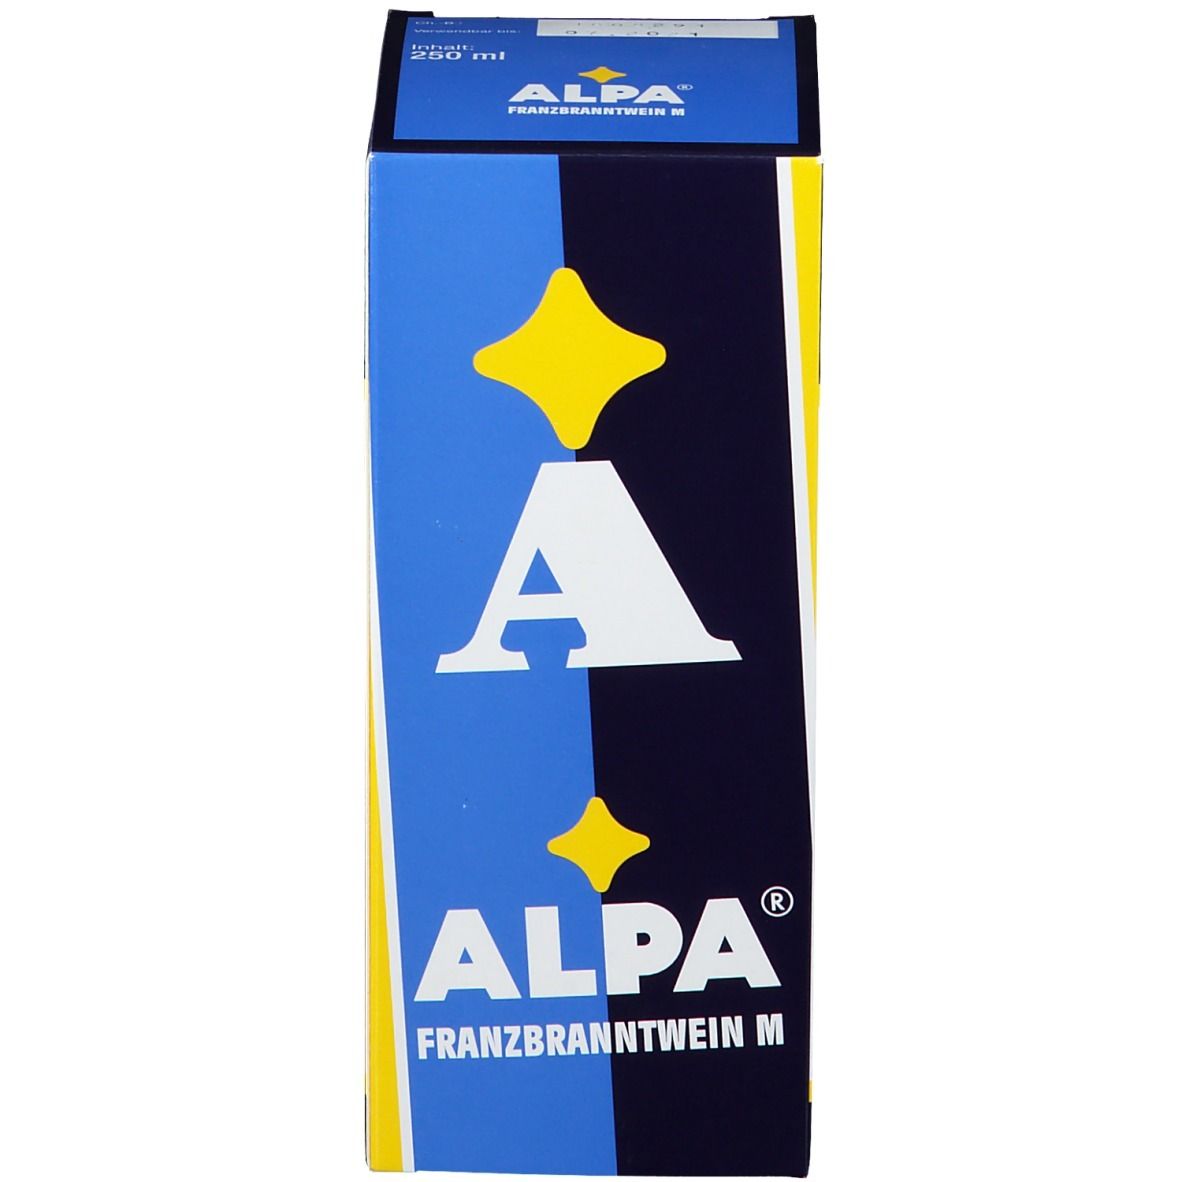 ALPA® Franzbranntwein M